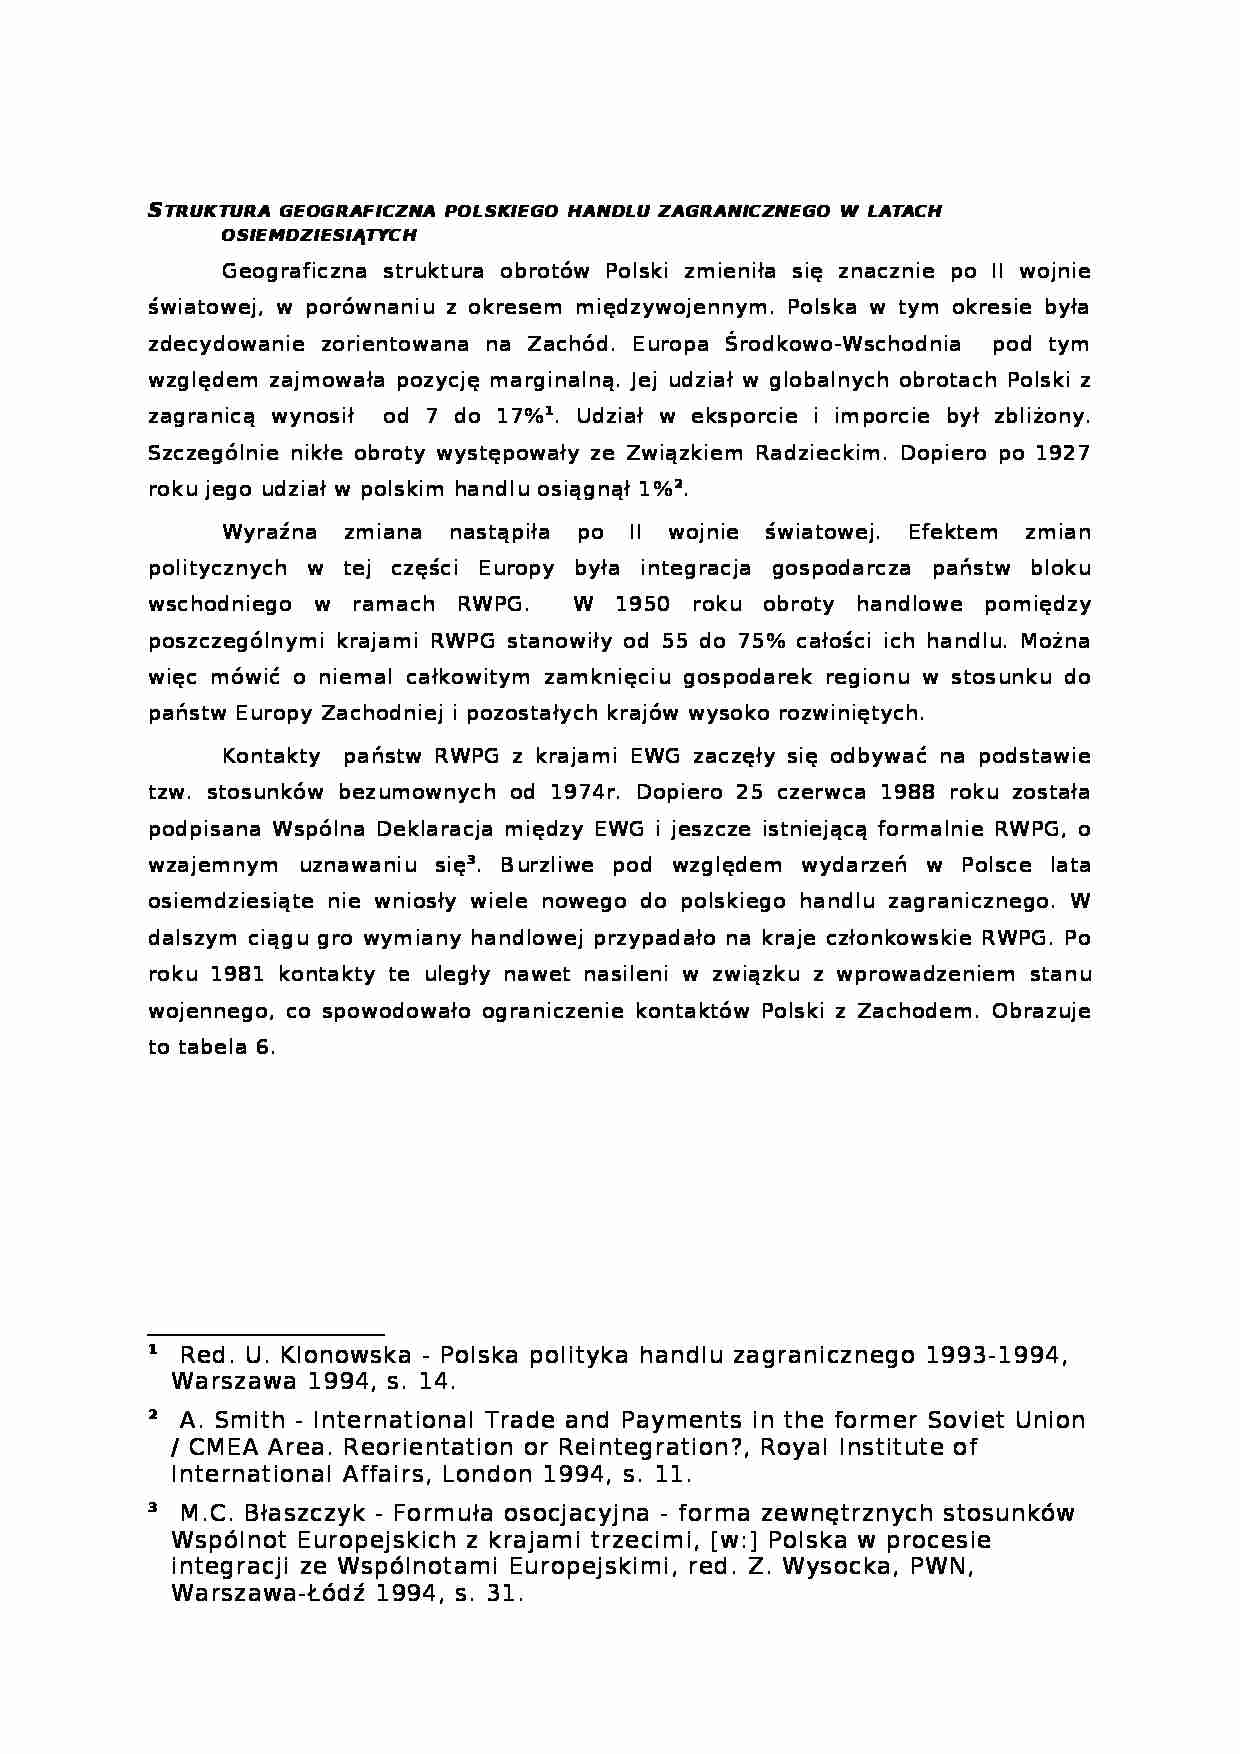 Struktura geograficzna polskiego handlu zagranicznego w latach osiemdziesiątych - strona 1